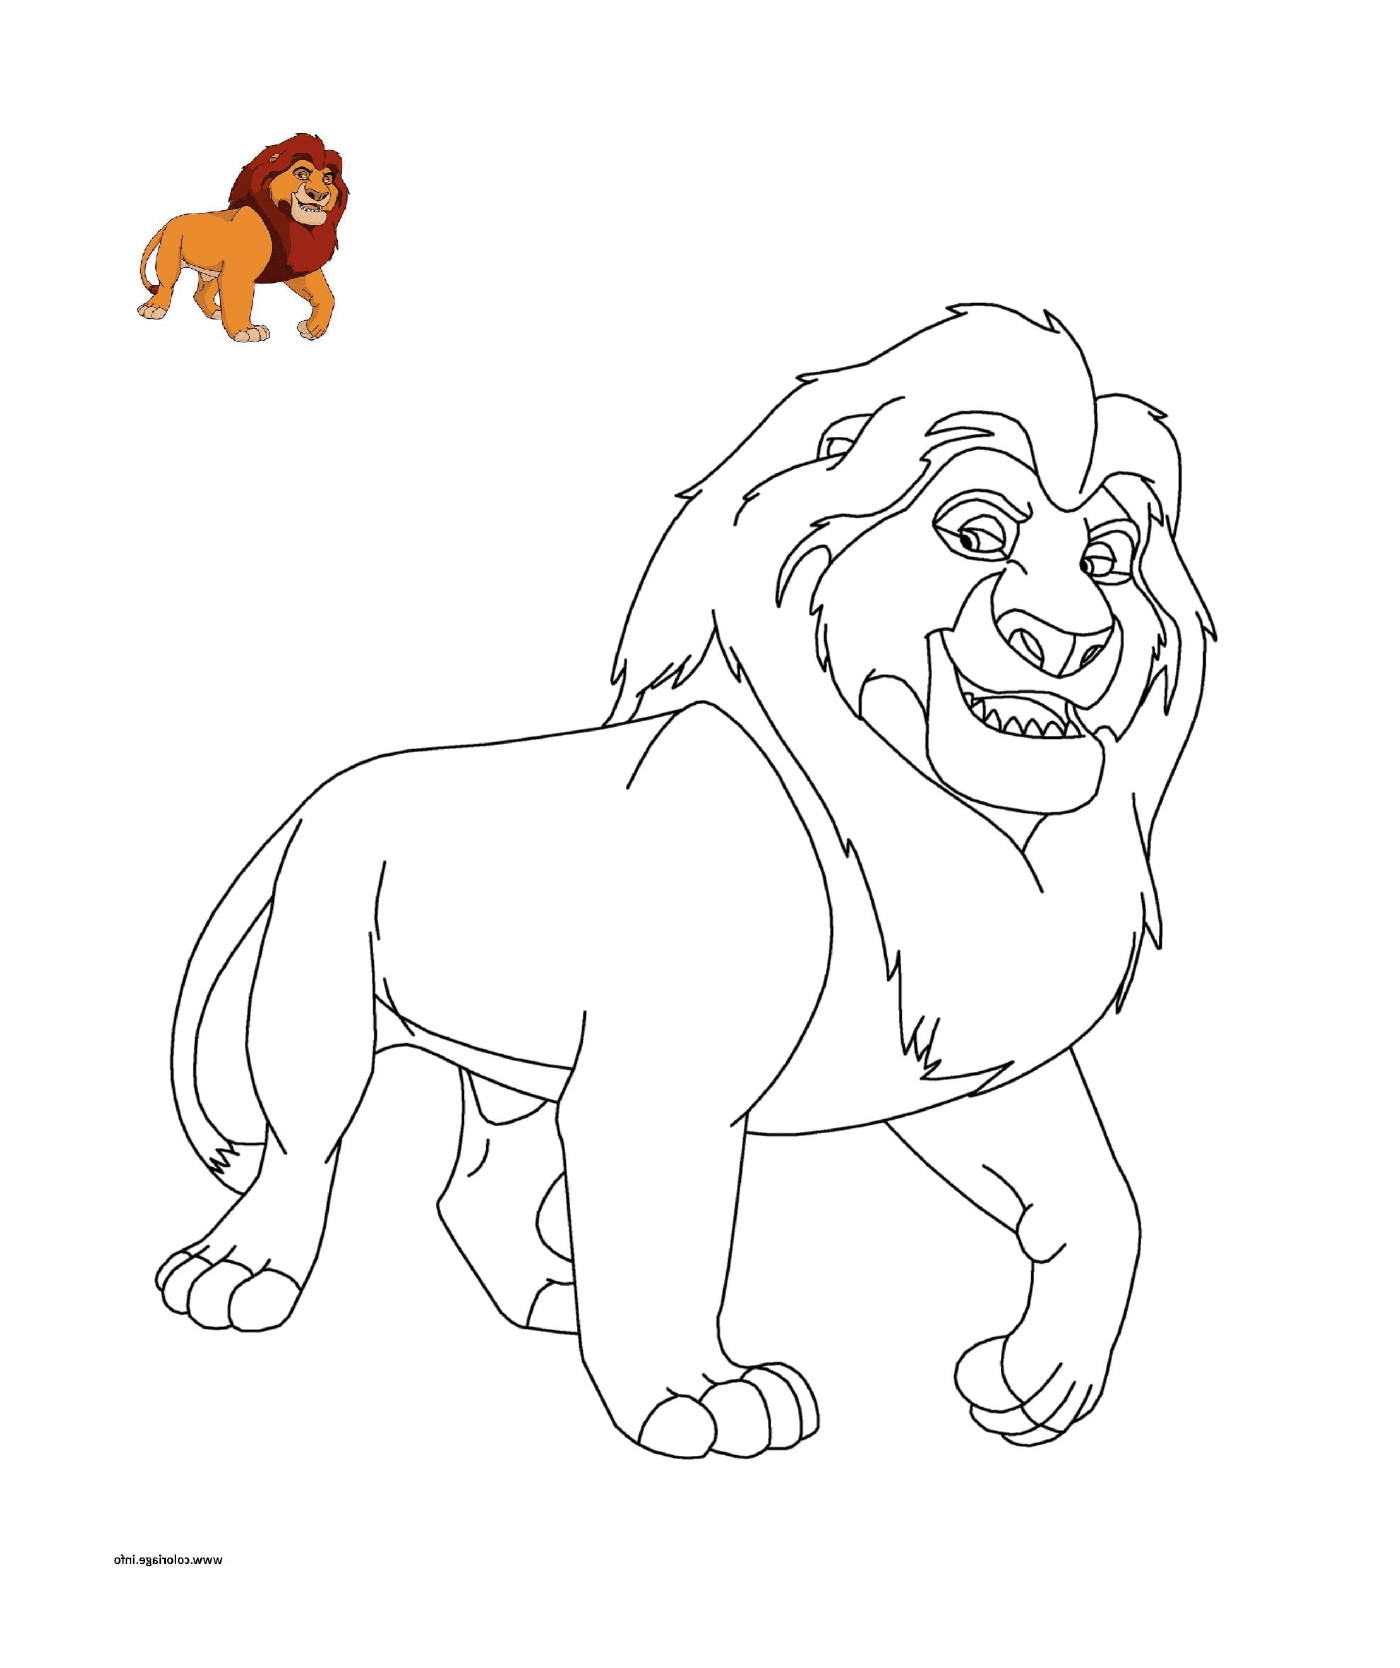   Le Roi Lion de Disney avec un lion à côté d'un autre animal 